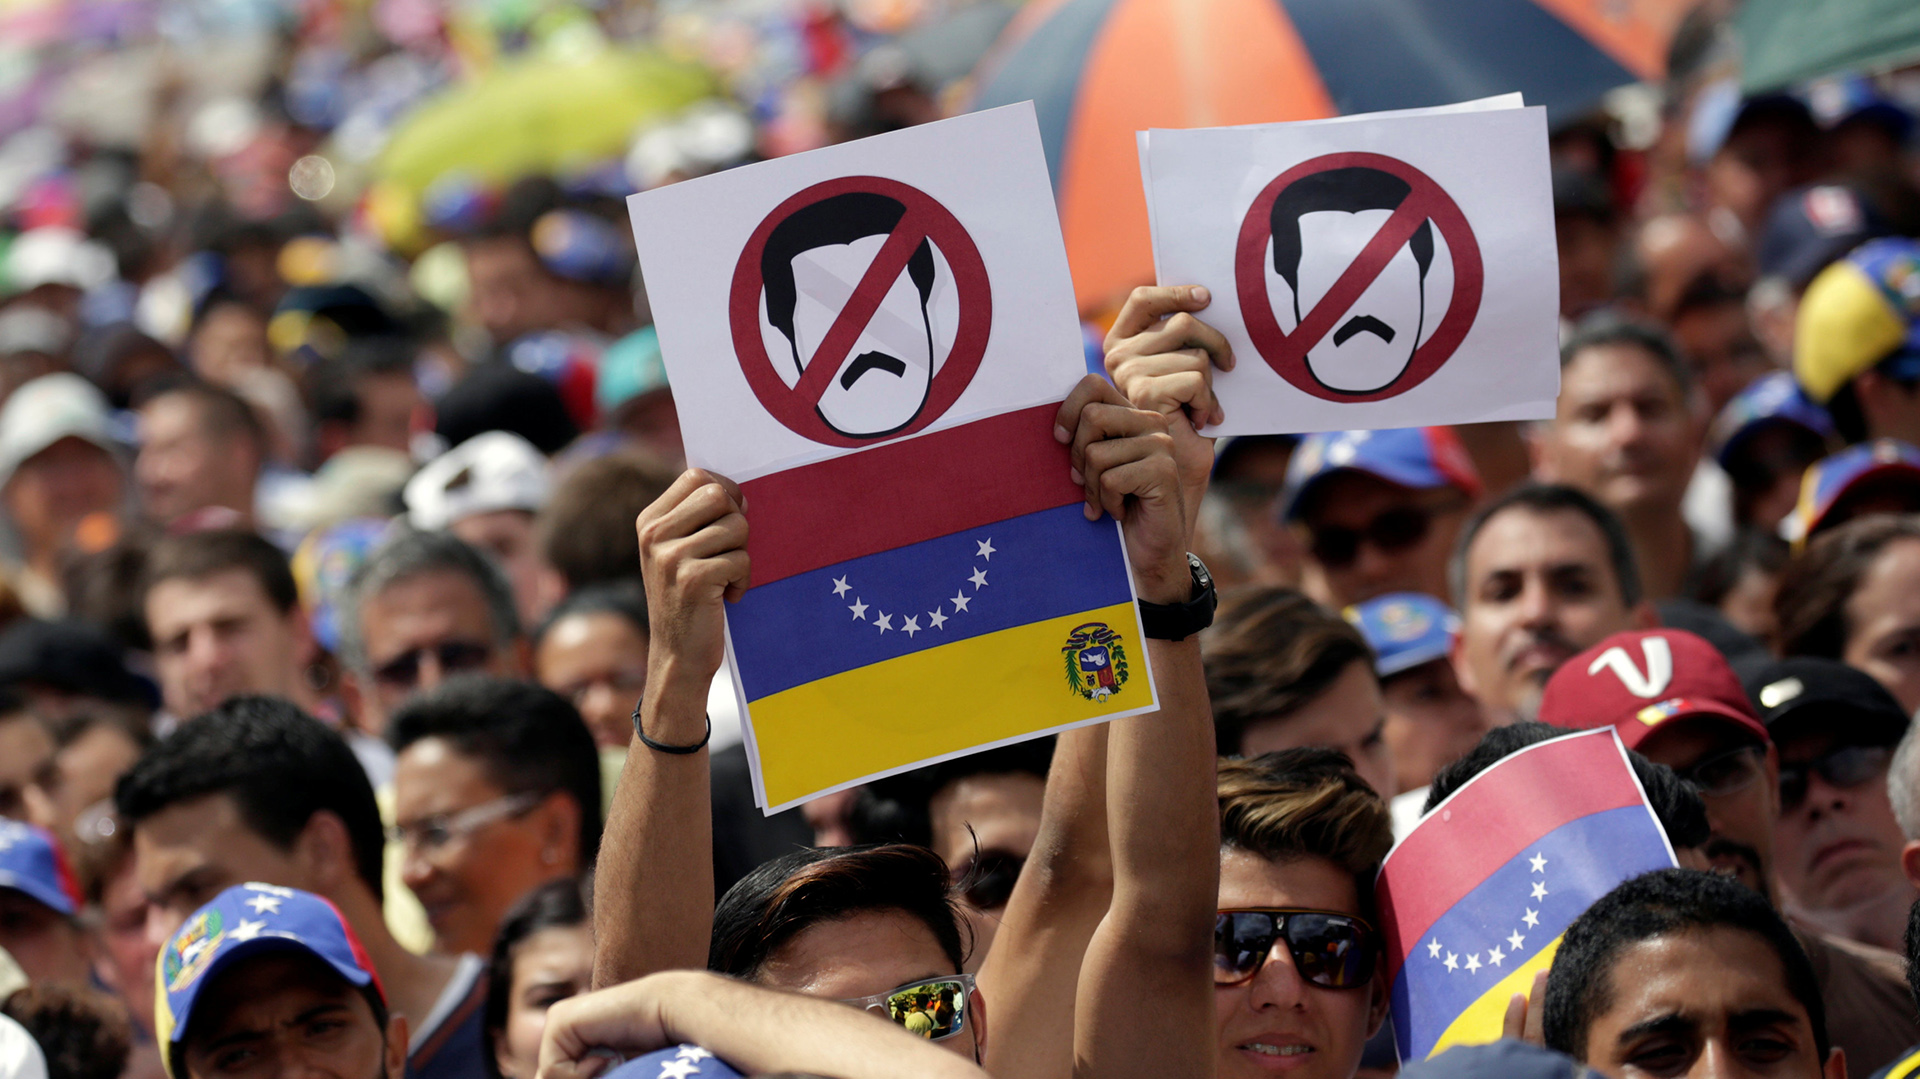 Dossier Especial sobre Venezuela: ¿Dialogo o Implosión?